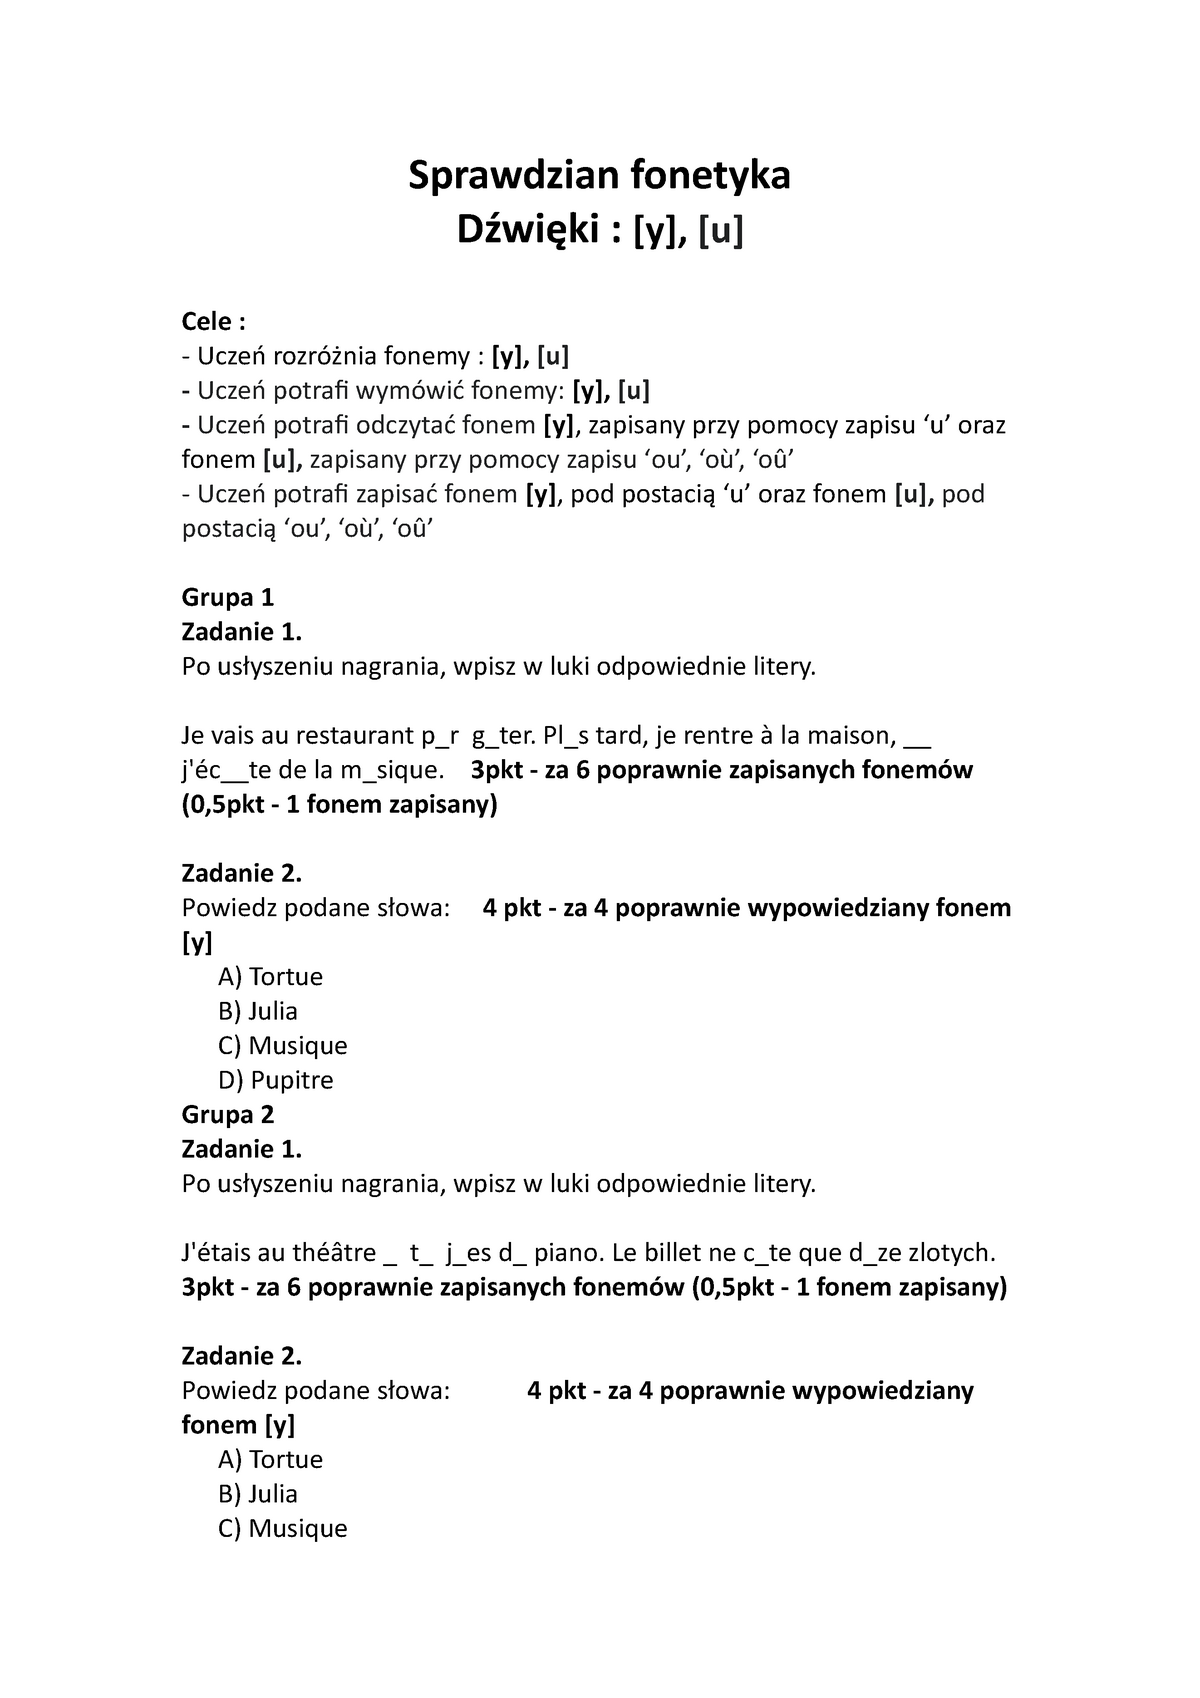 Sprawdzian Z Fonetyki Klasa 4 Sprawdzian fonetyka - Sprawdzian fonetyka Dźwięki : [y], [u] Cele